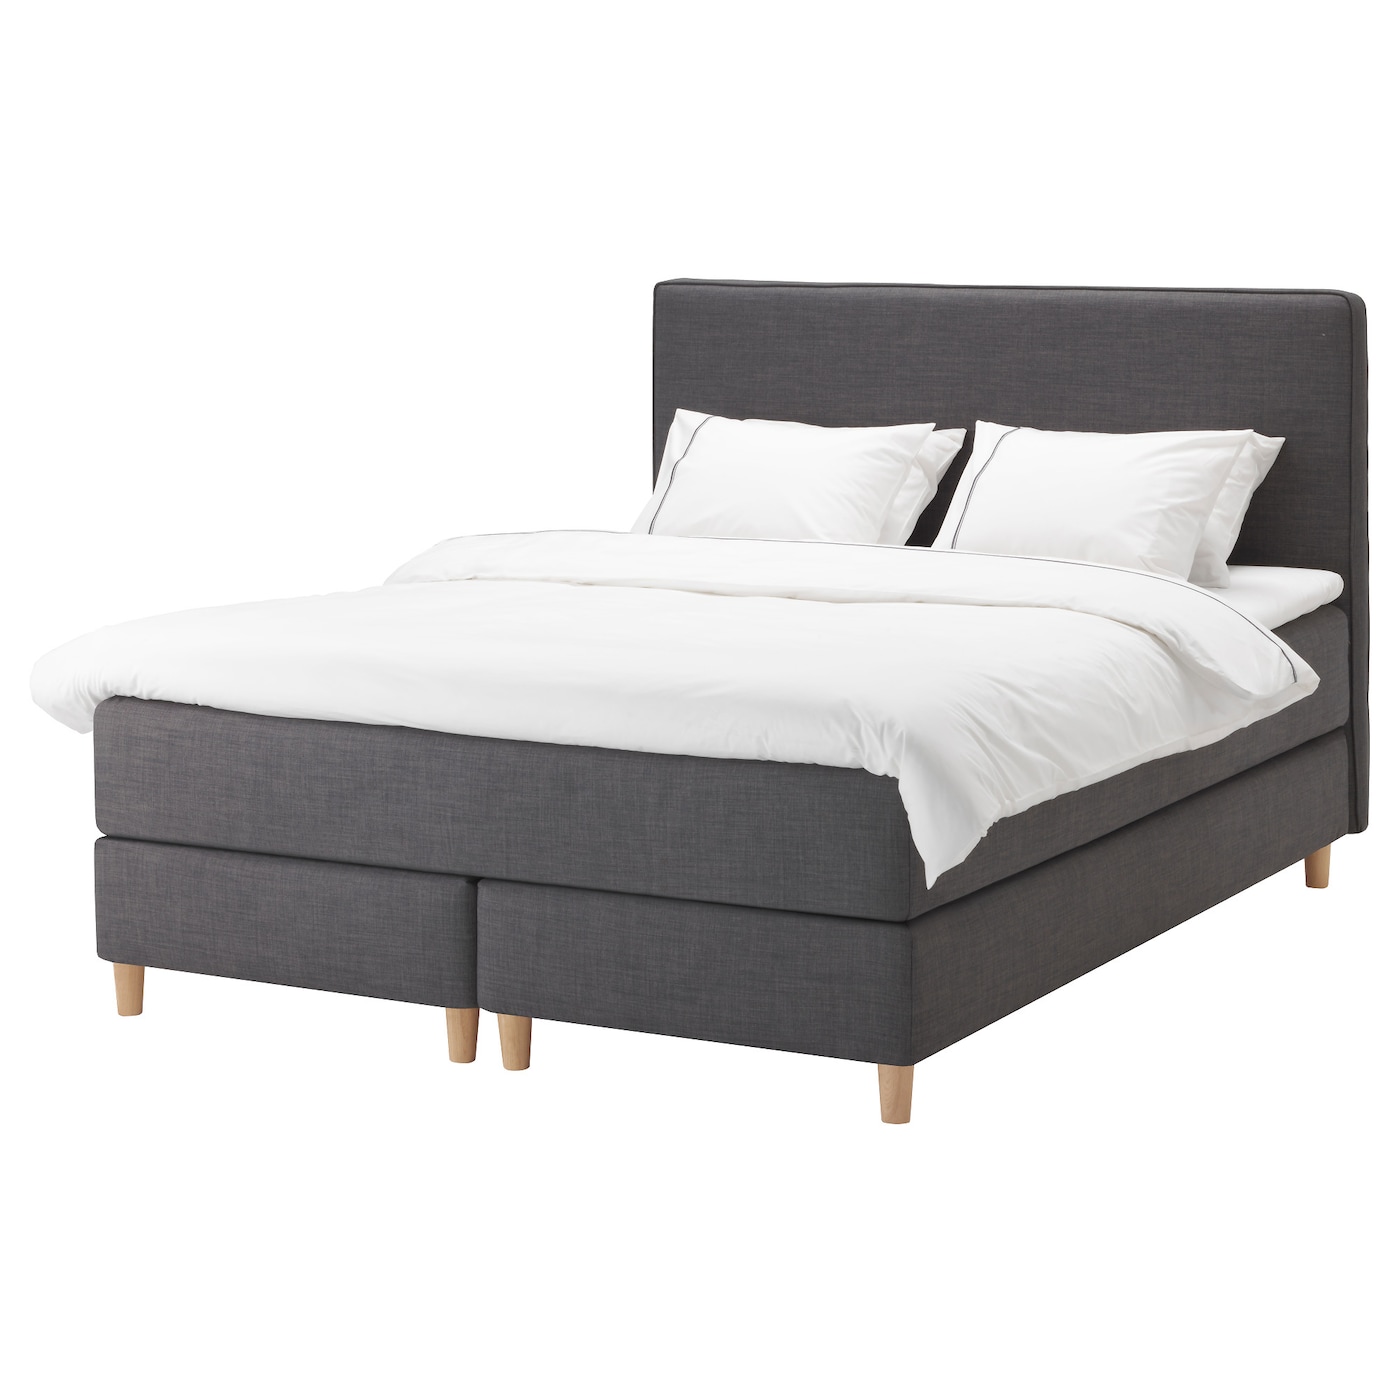 Континентальная кровать - IKEA DUNVIK, 200х180 см, жесткий матрас, темно-серый, ДУНВИК ИКЕА